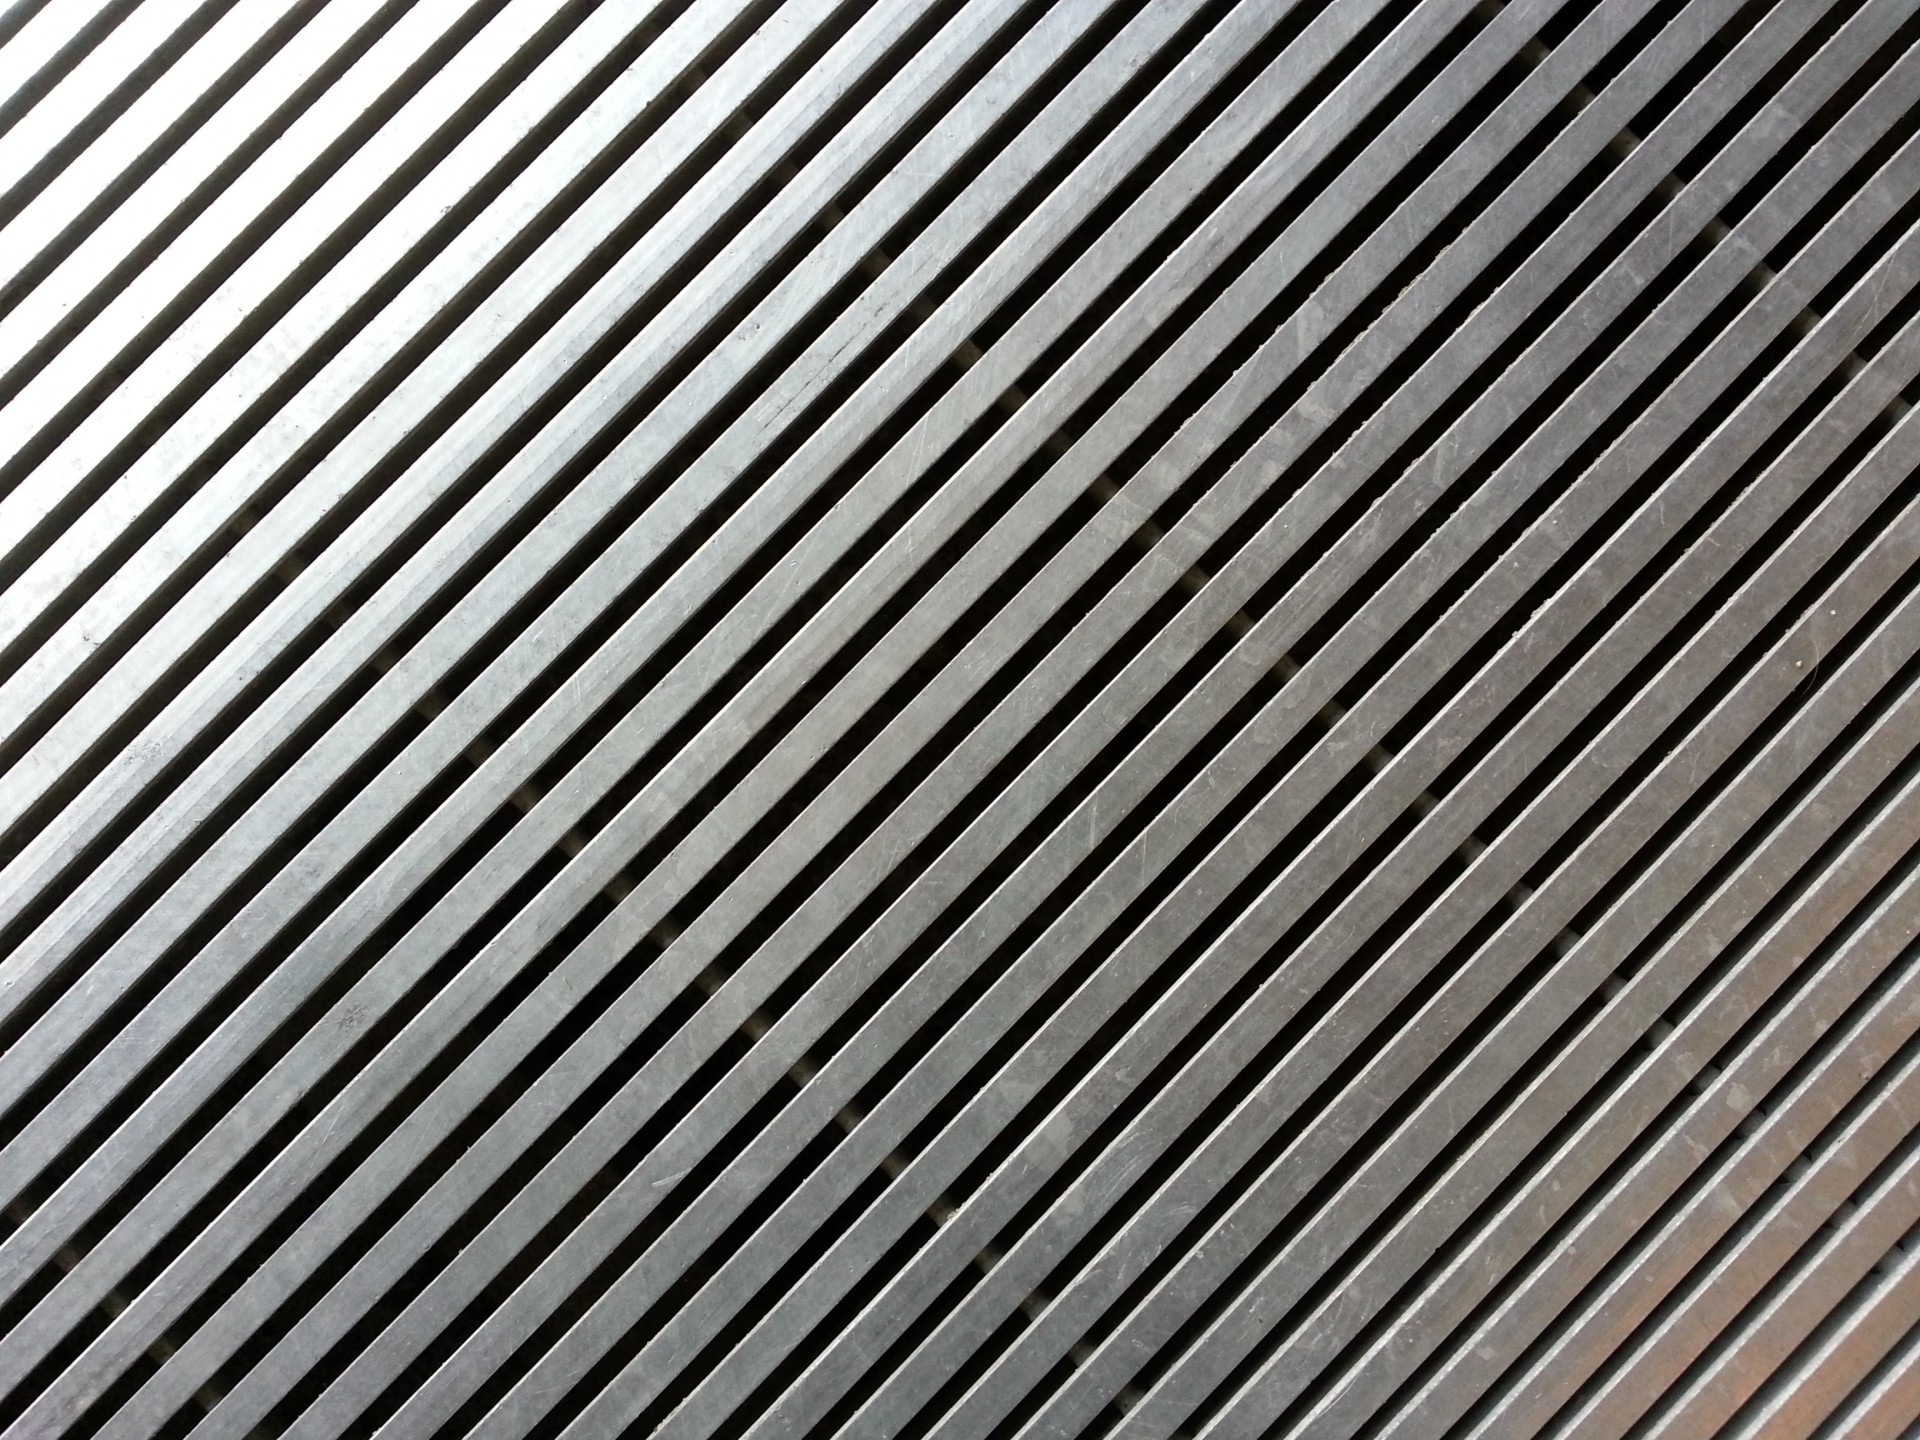 Metal mesh that form oblique lines